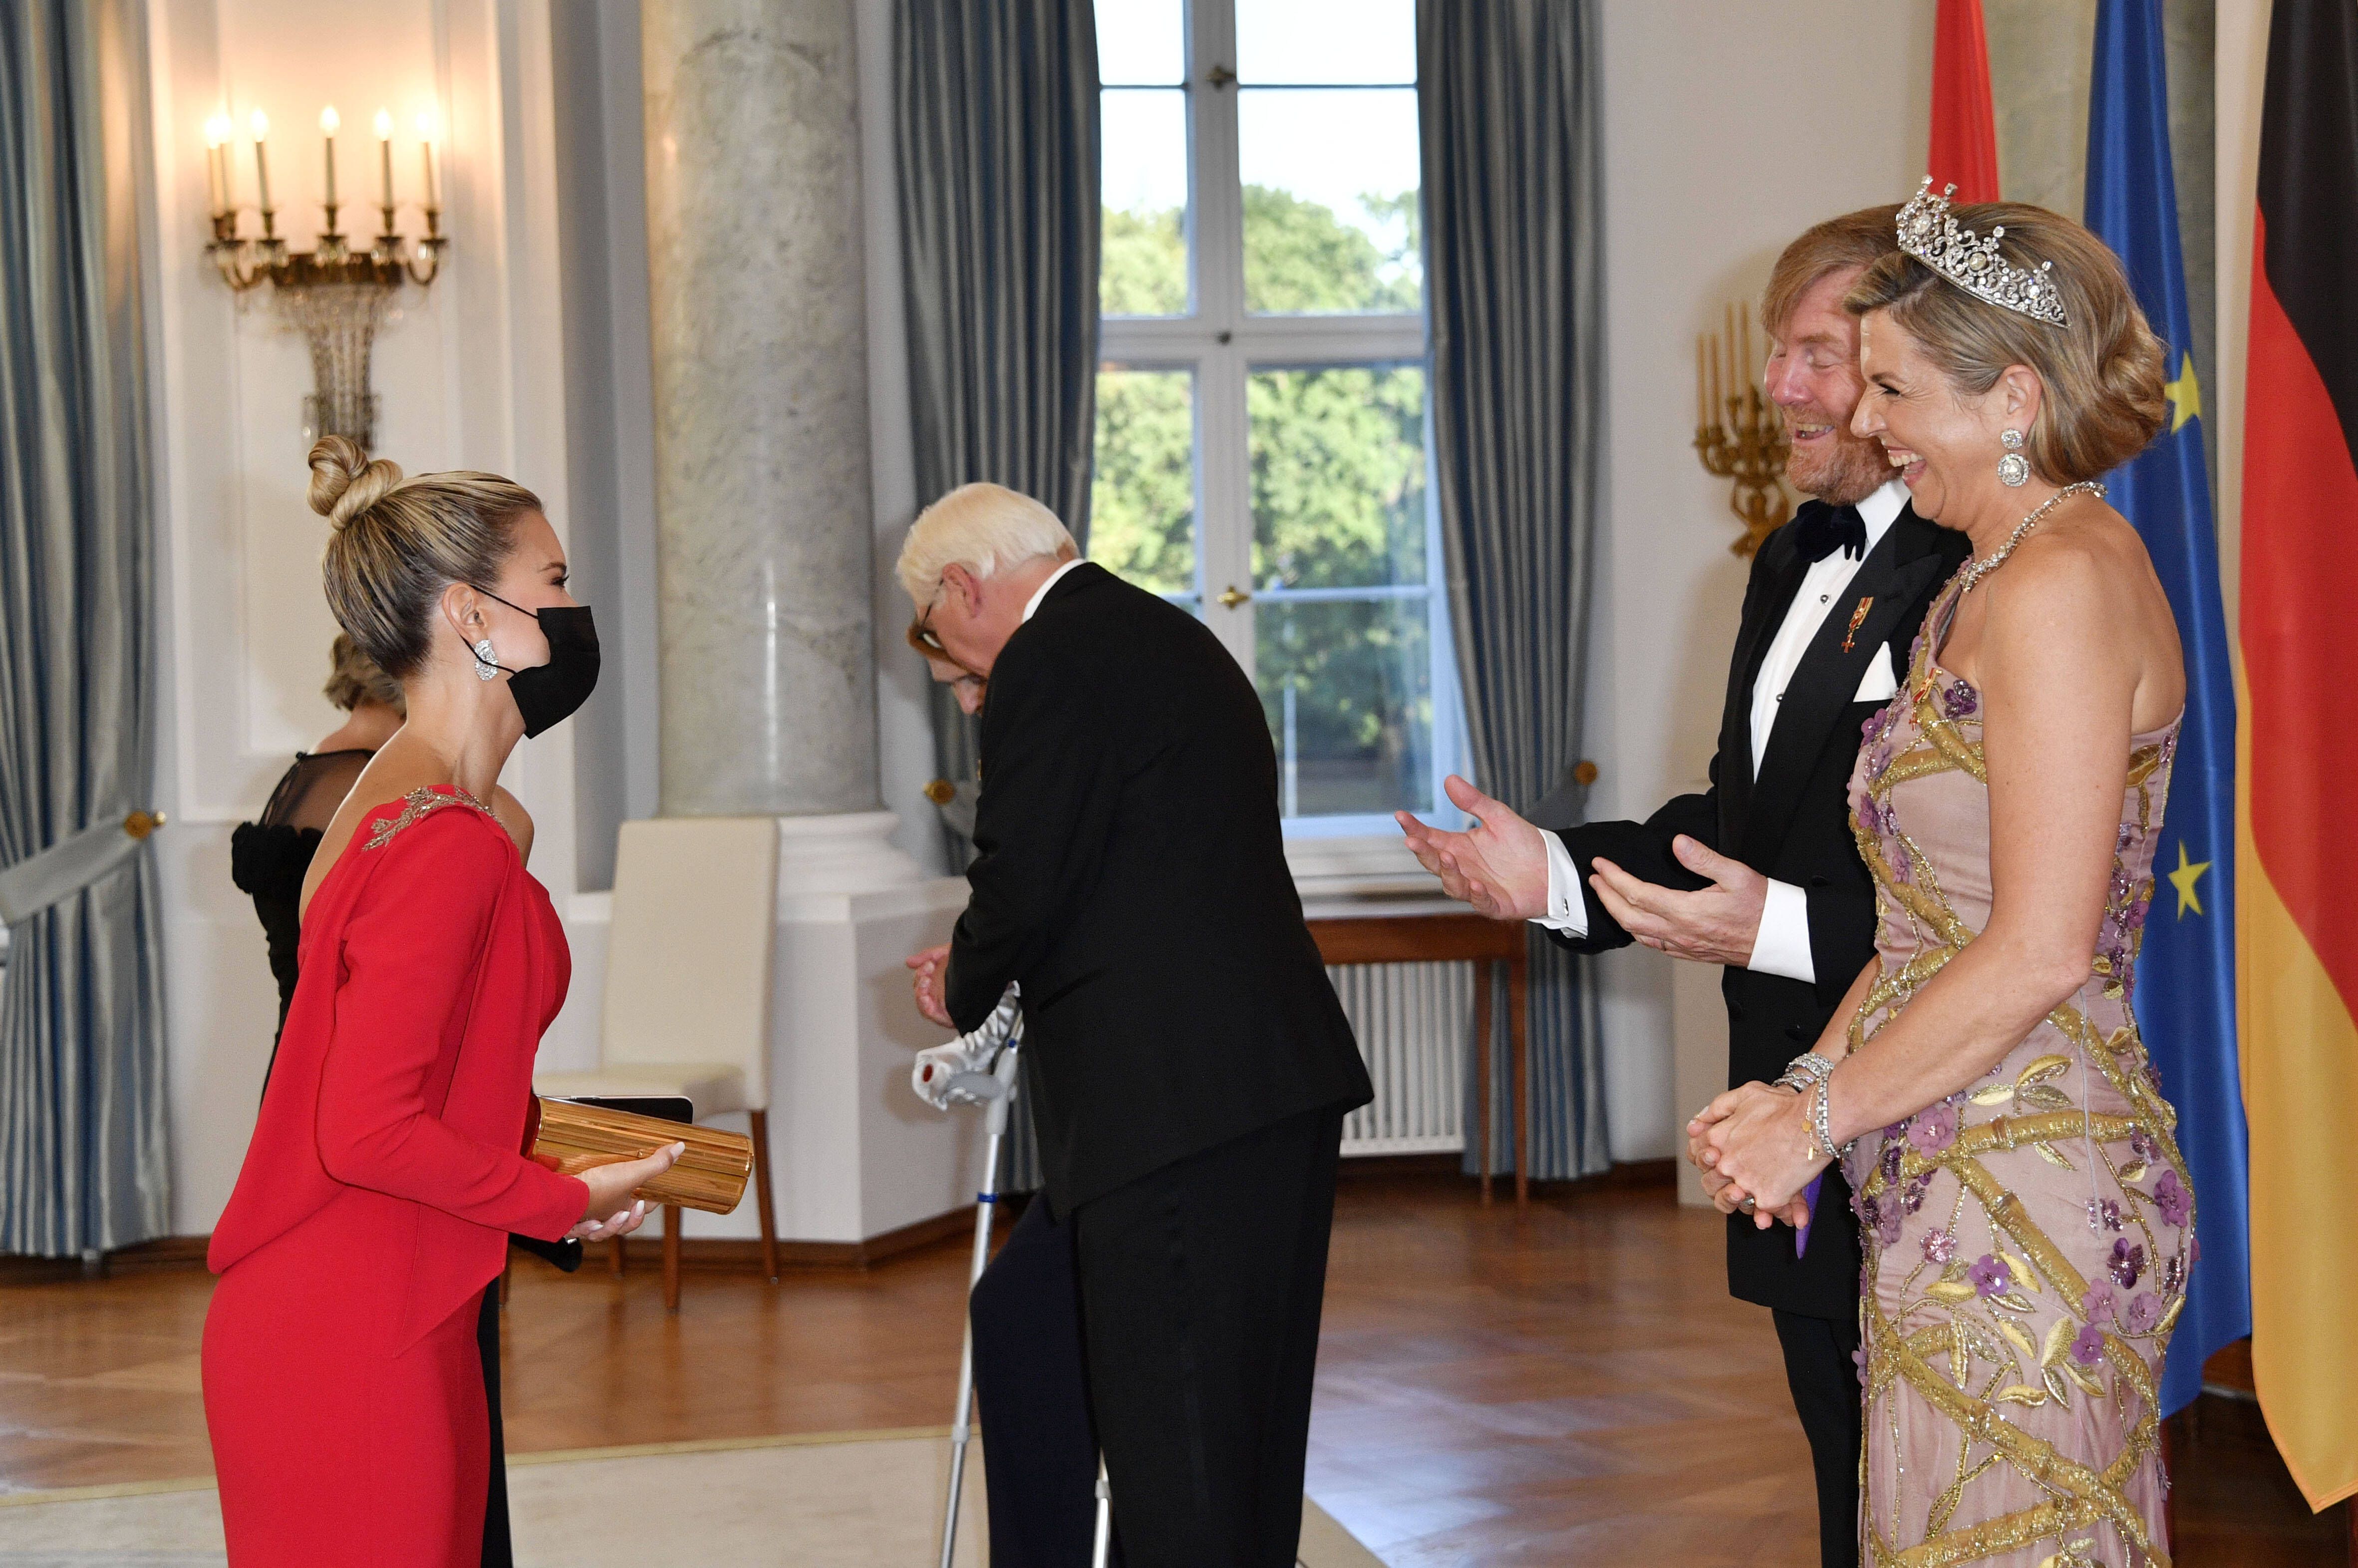 Sylvie Meis traf das niederländische Königspaar im Jahr 2021 in Berlin